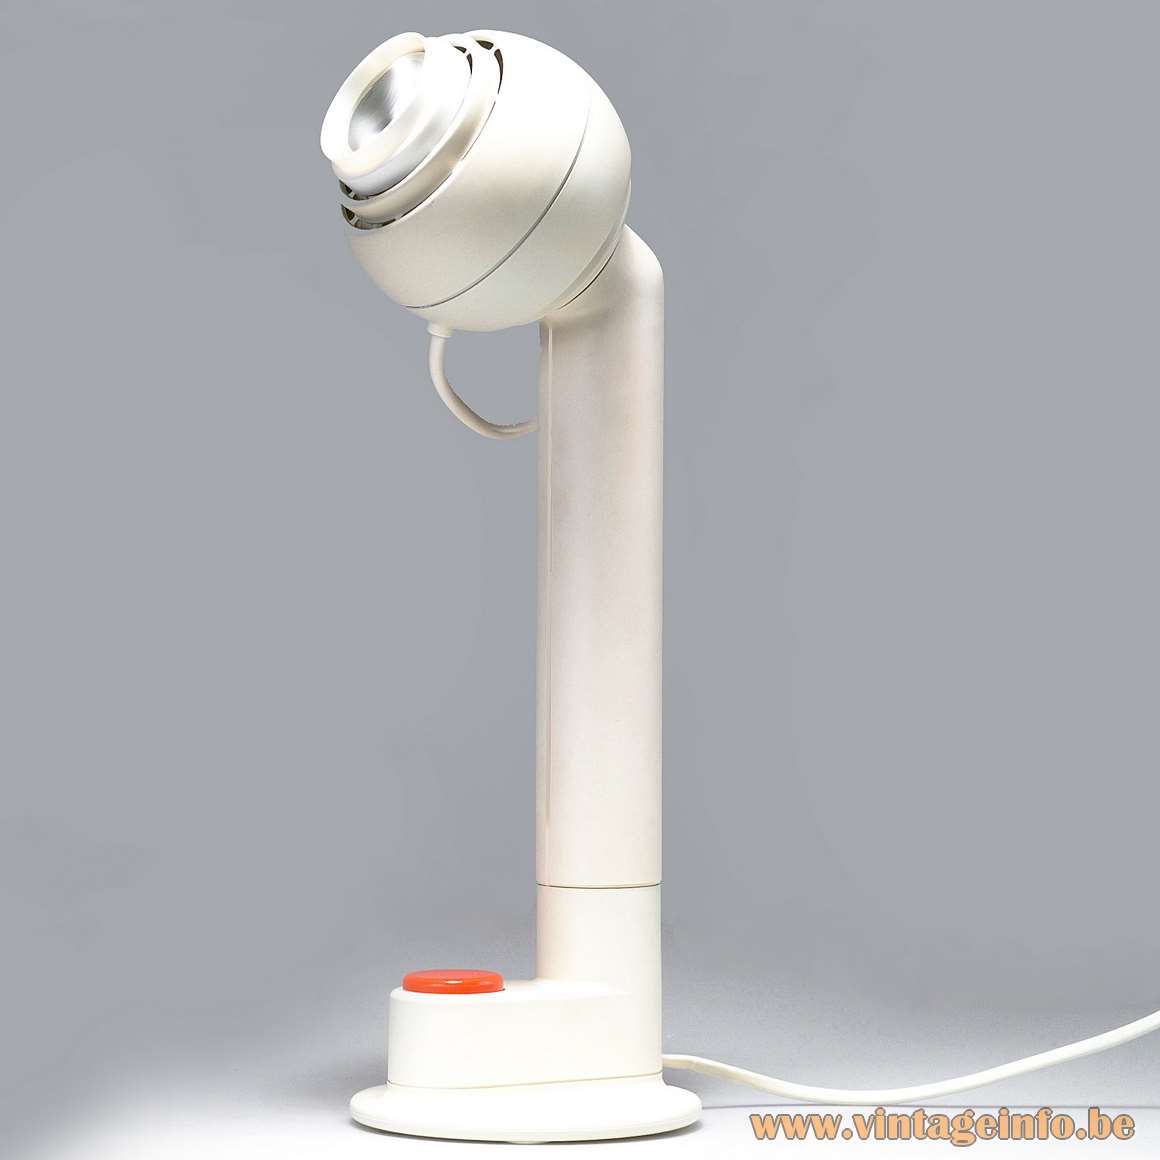 Osram Concentra Agilo table lamp Schlagheck Schultes design white metal orange plastic button magnet globe 1970s